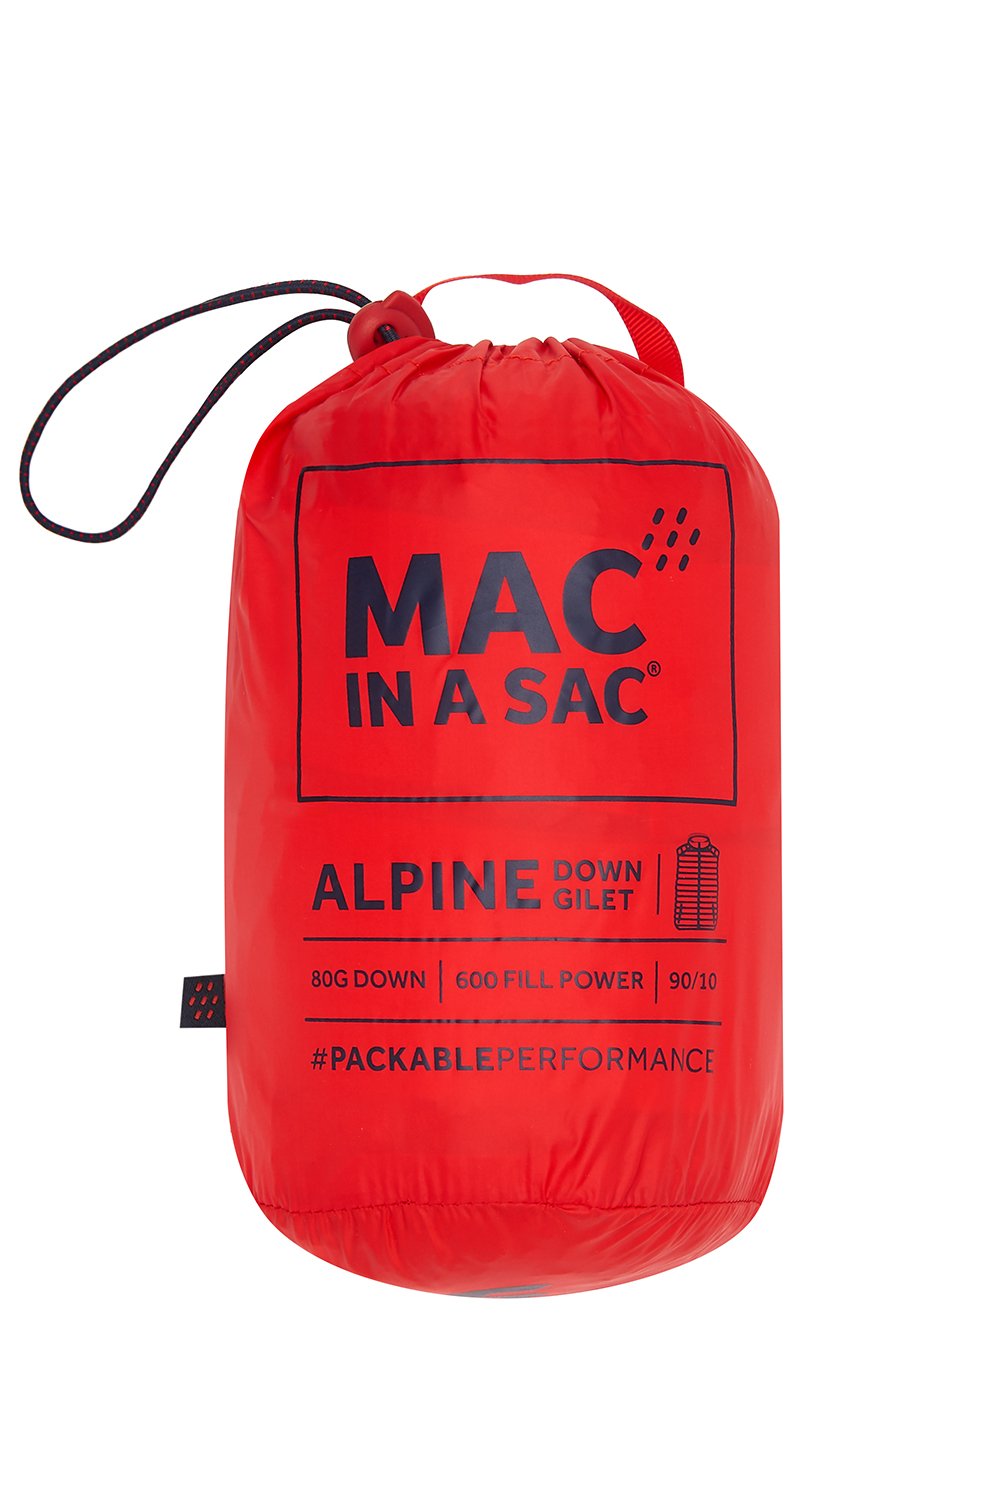 Alpine - Men's Packable Down Gilet - Red